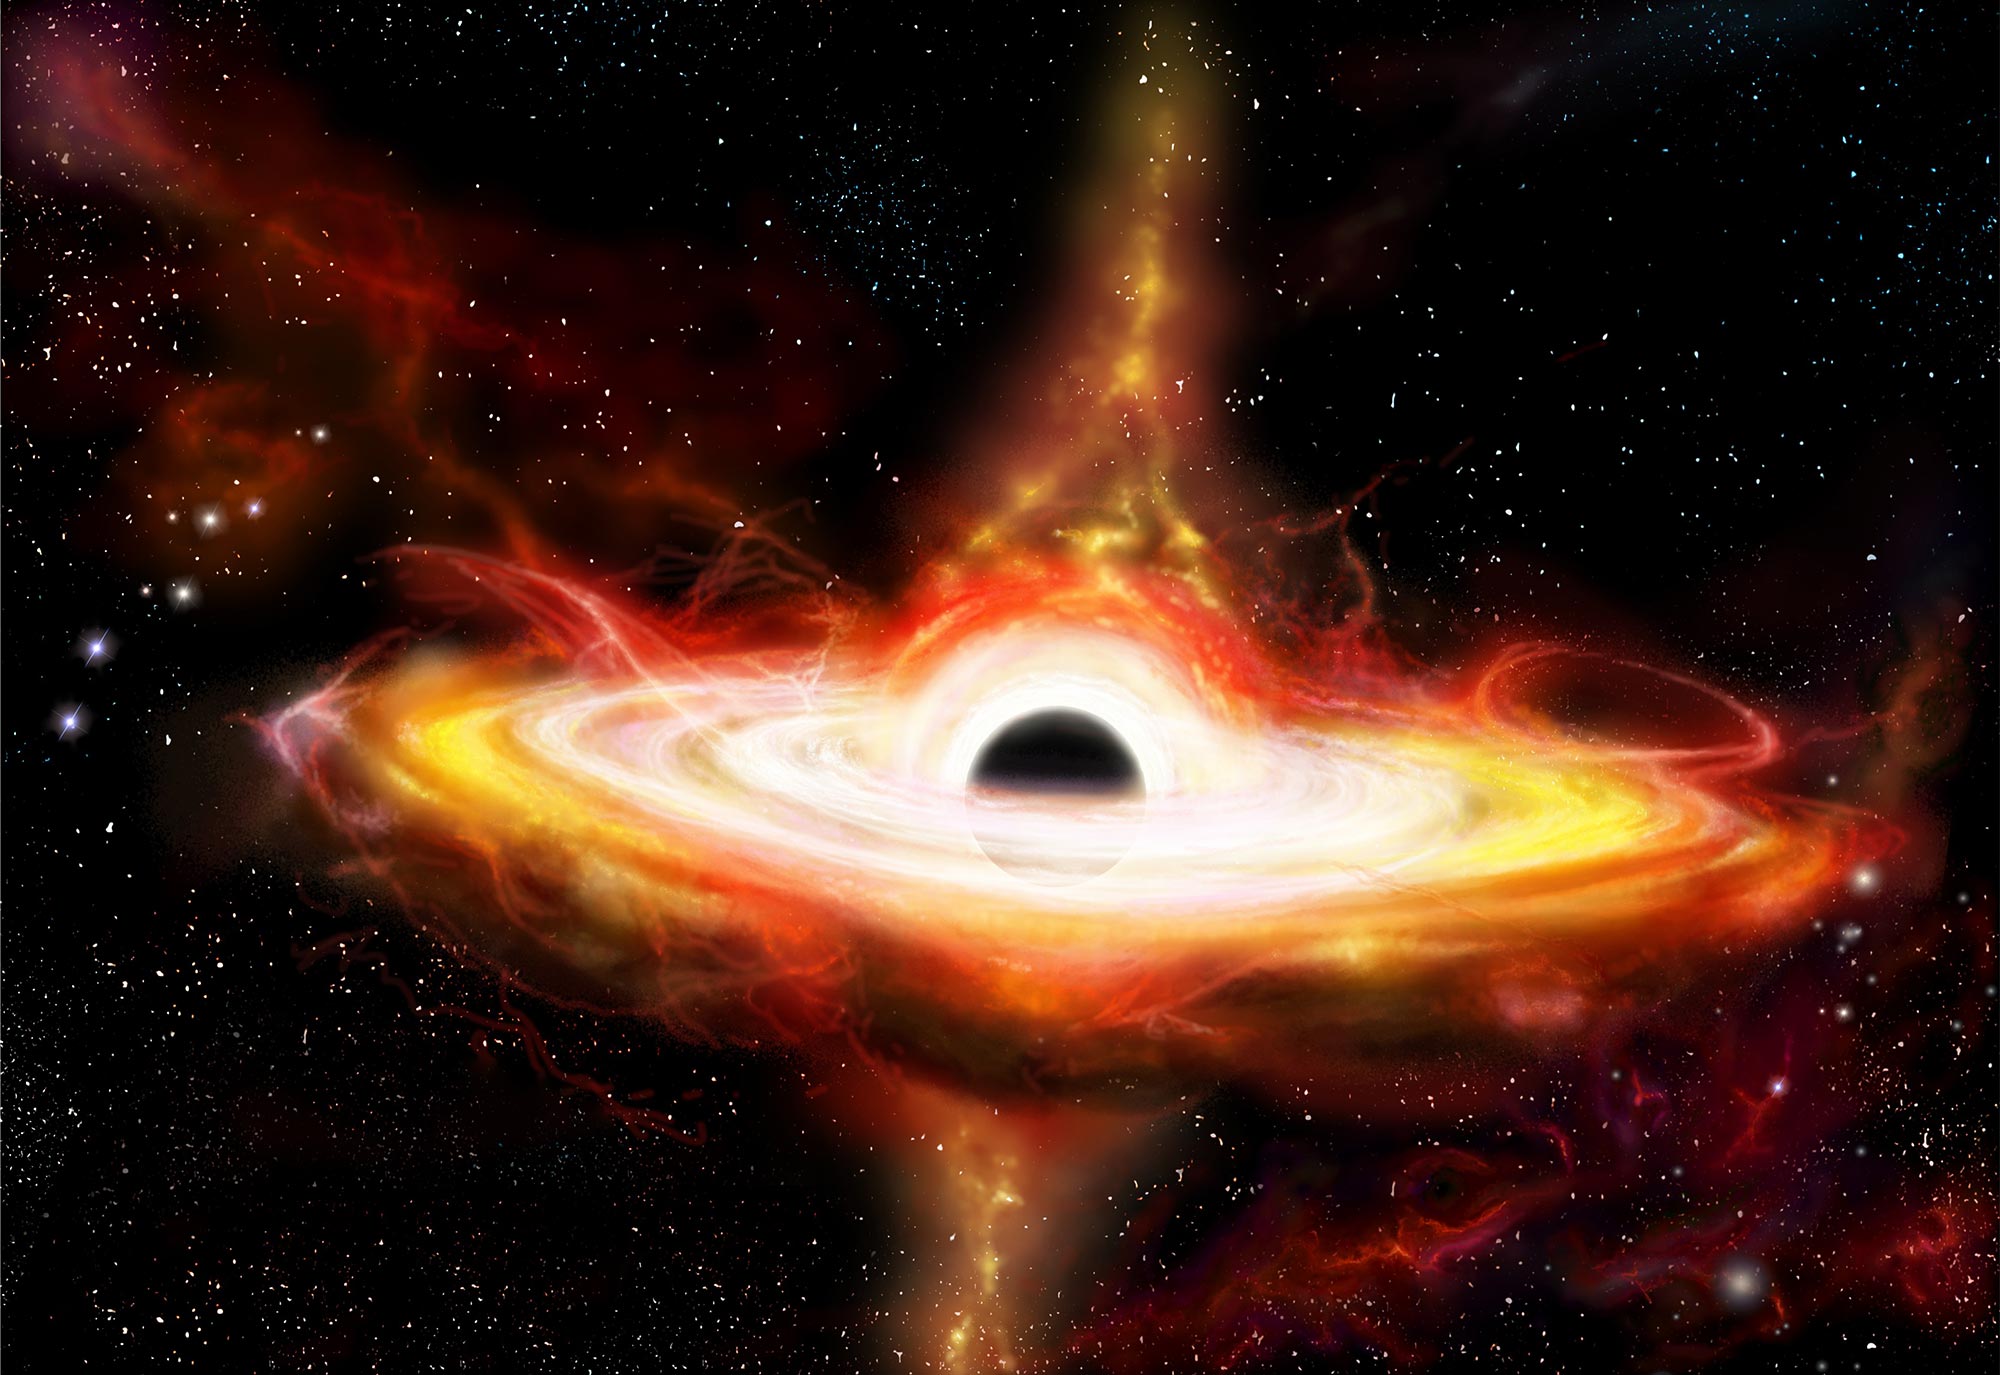 Rilevazione di un buco nero supermassiccio con una massa di 30 miliardi di termini solari attraverso il fenomeno della flessione della luce